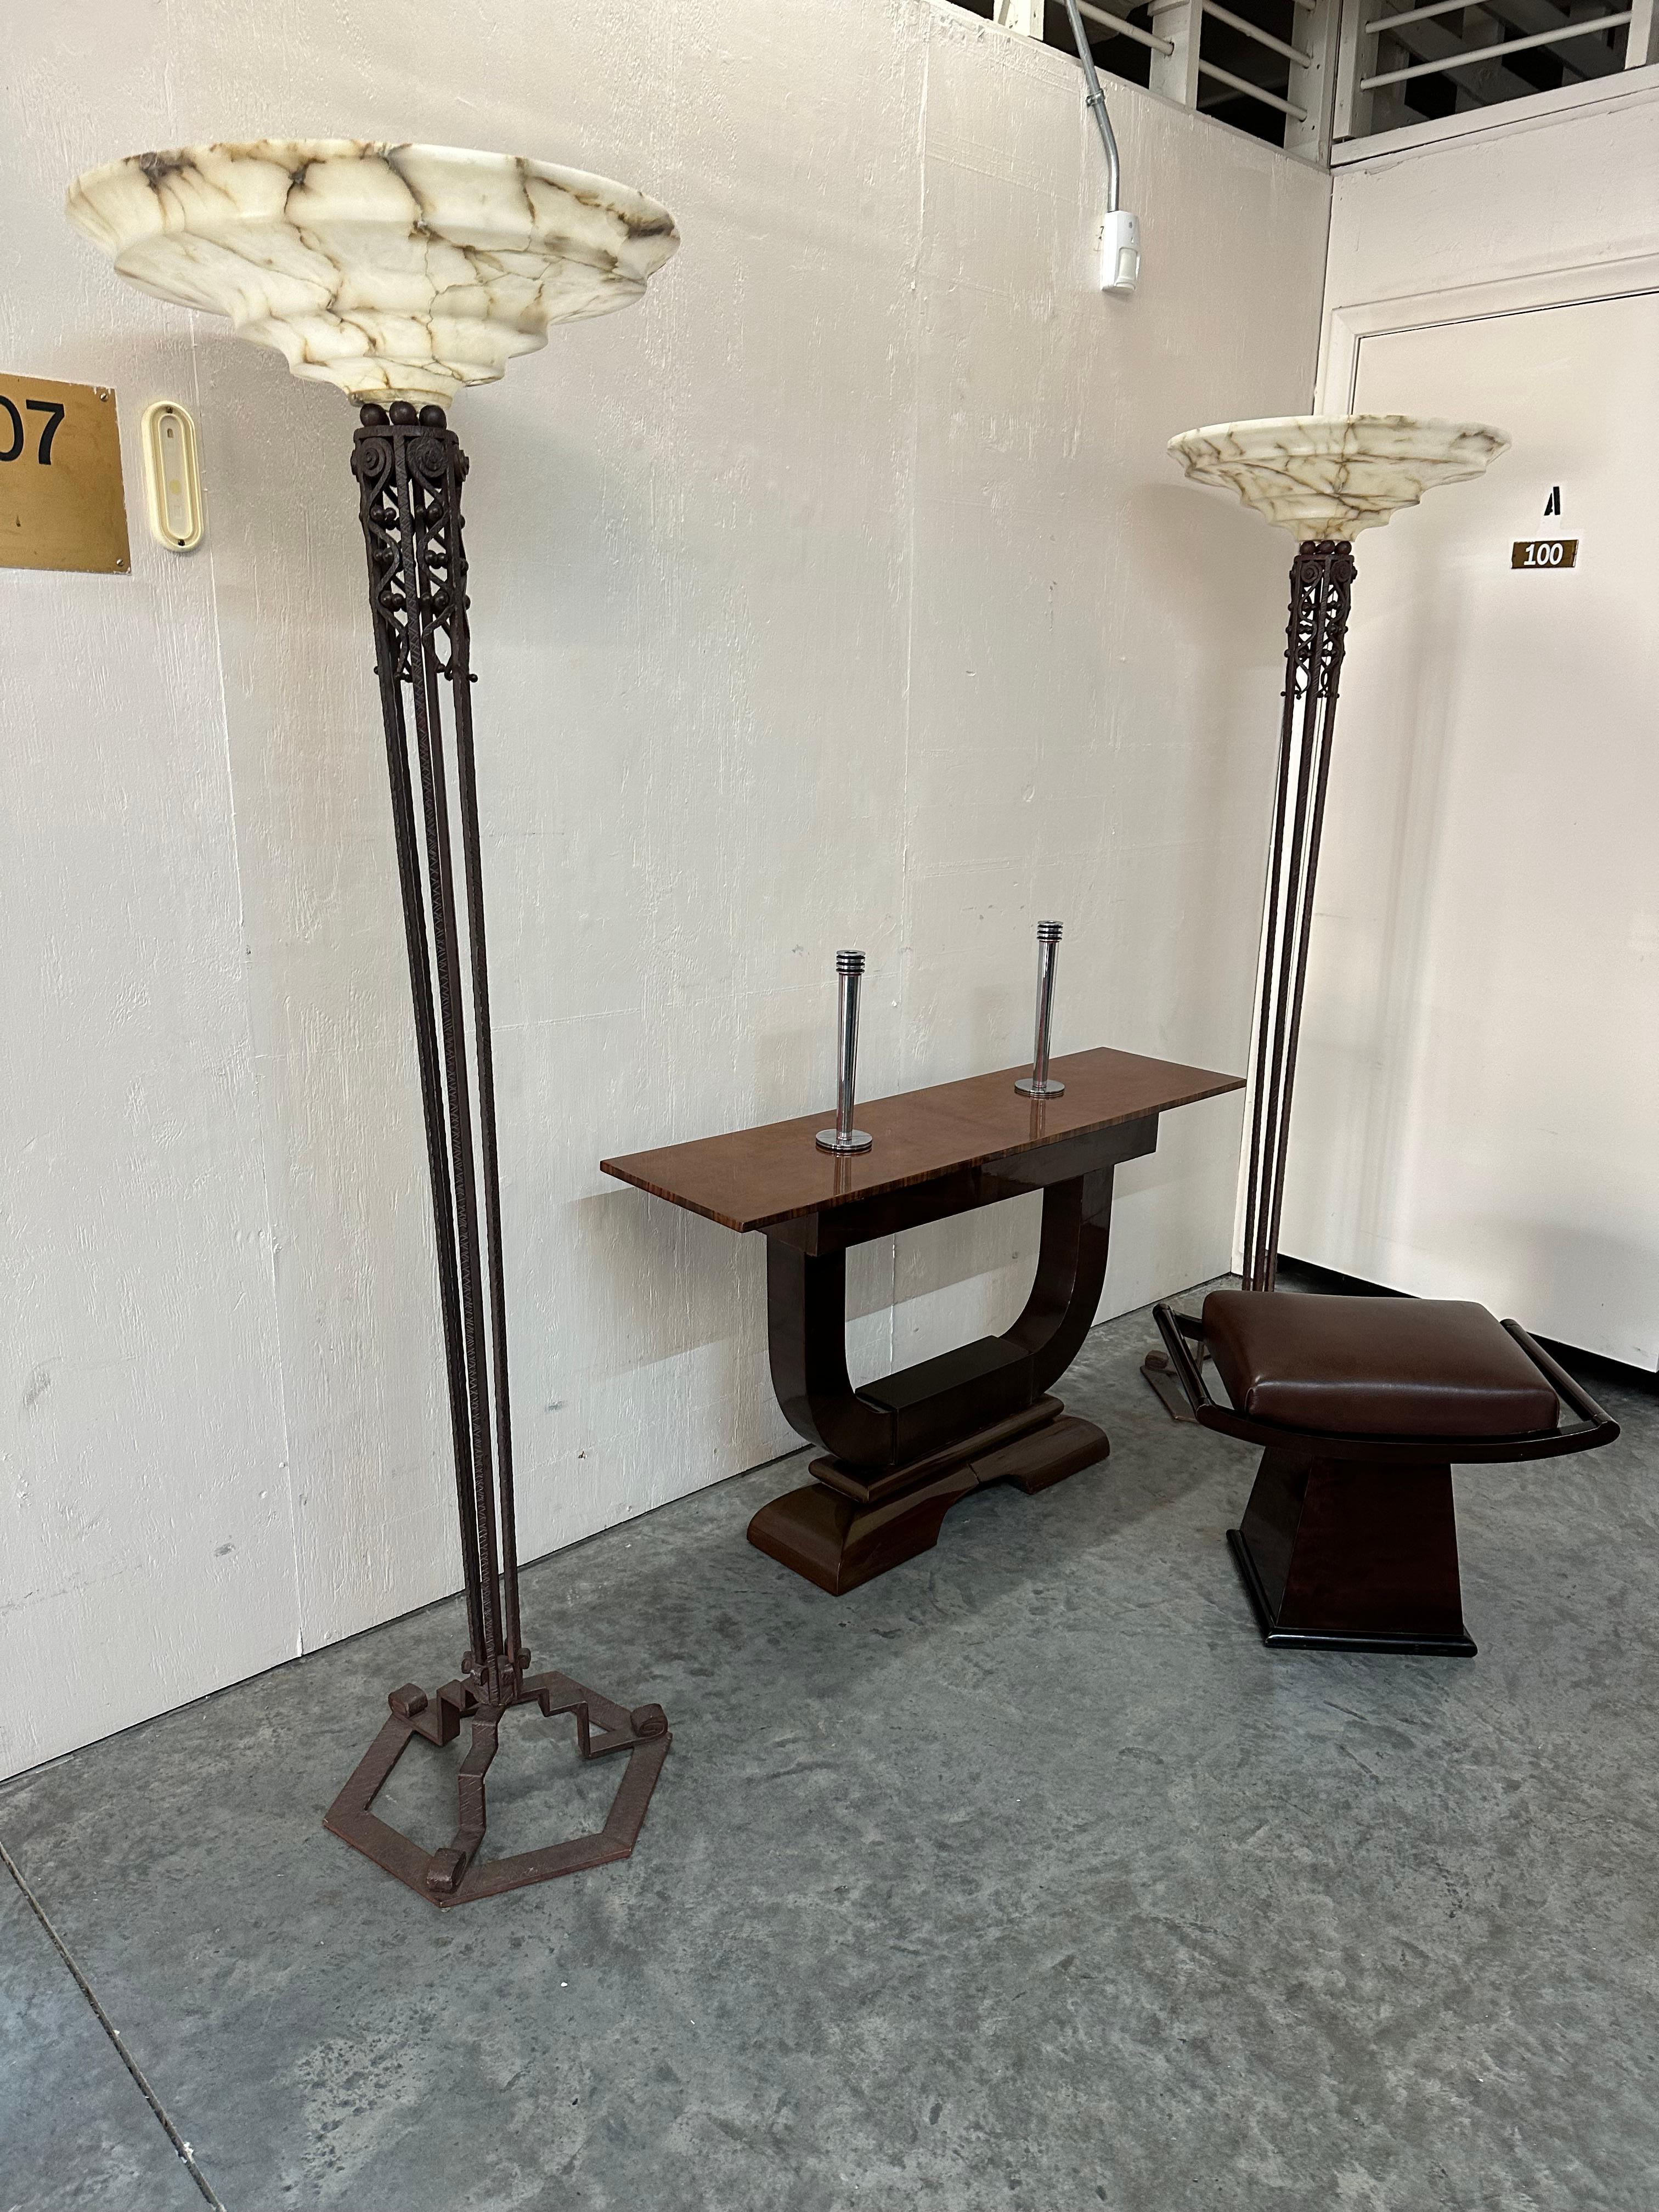 2 Floor Lamps, Jugendstil, Art Nouveau, Liberty, Materials: Alabaster and iron For Sale 3